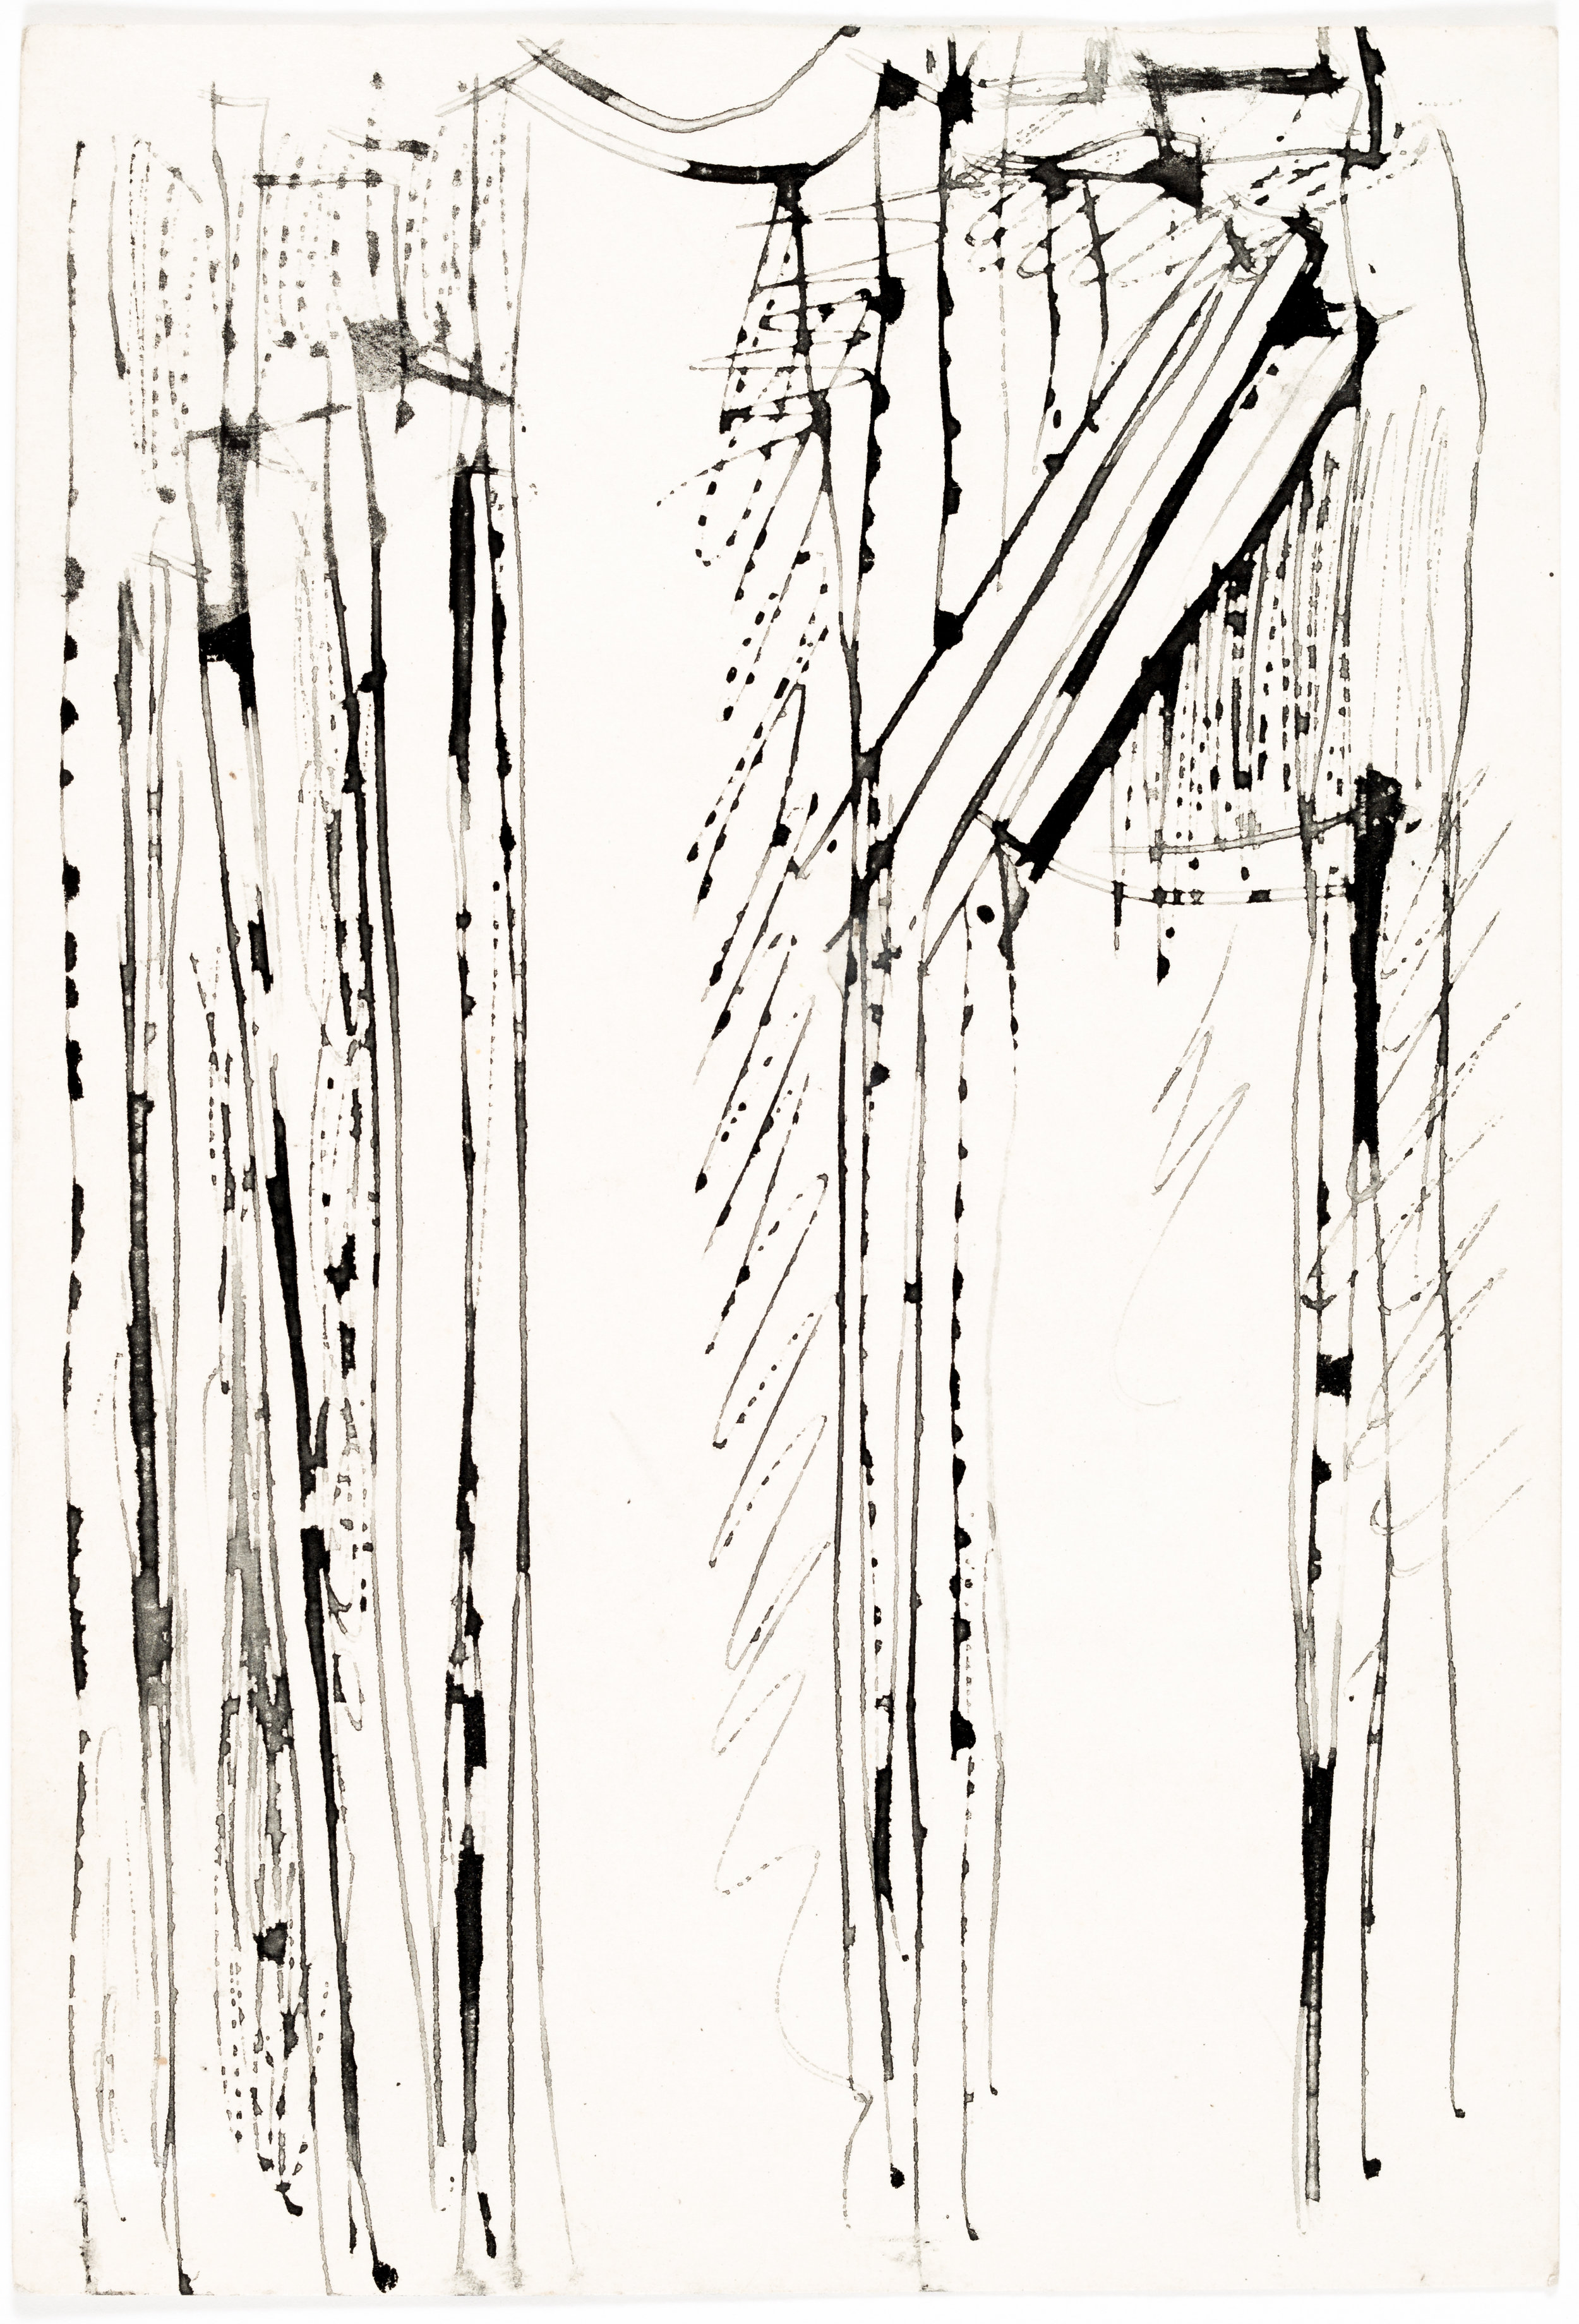 Андрей Красулин — эскиз рельефа для рязанской филармонии